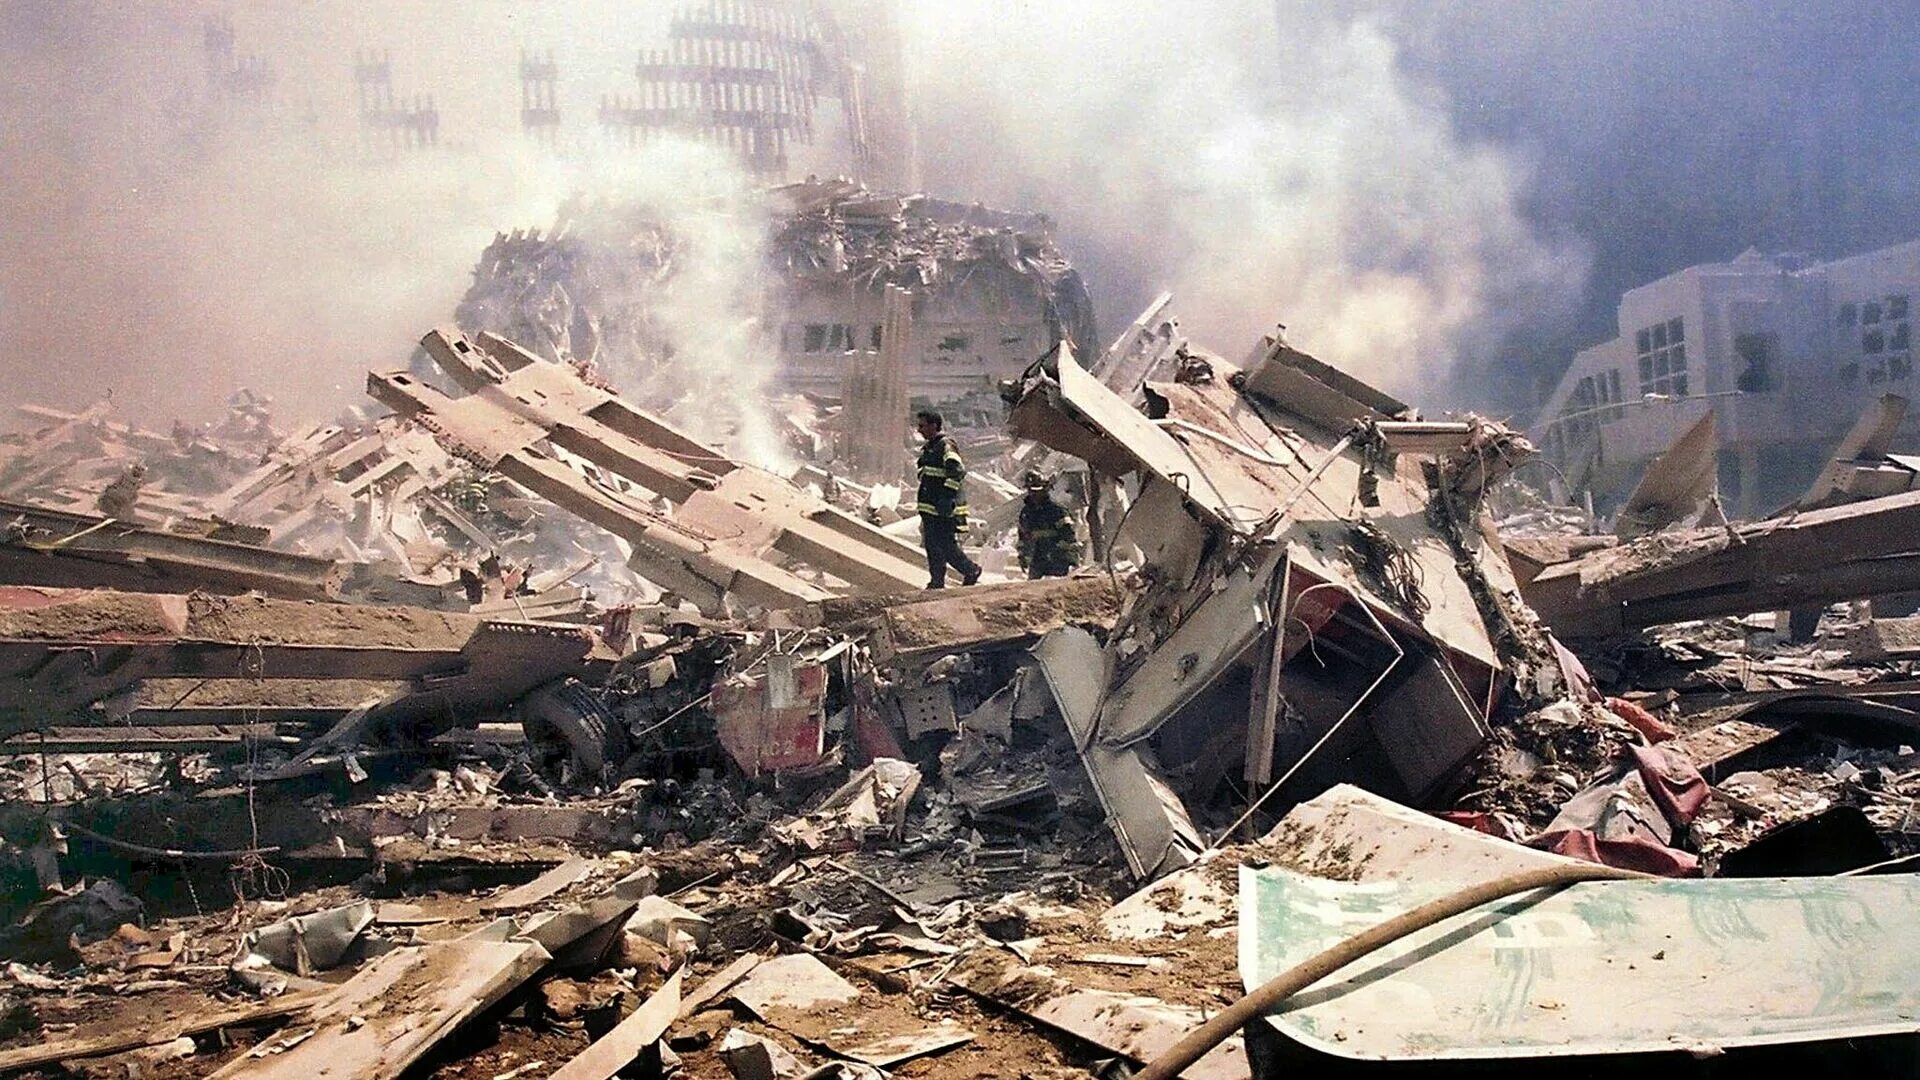 Теракт в 2001 году 11 сентября. Теракт в Нью-Йорке 11 сентября 2001. 11 Сентября 2001 года Пентагон. Обломки ВТЦ 11 сентября.